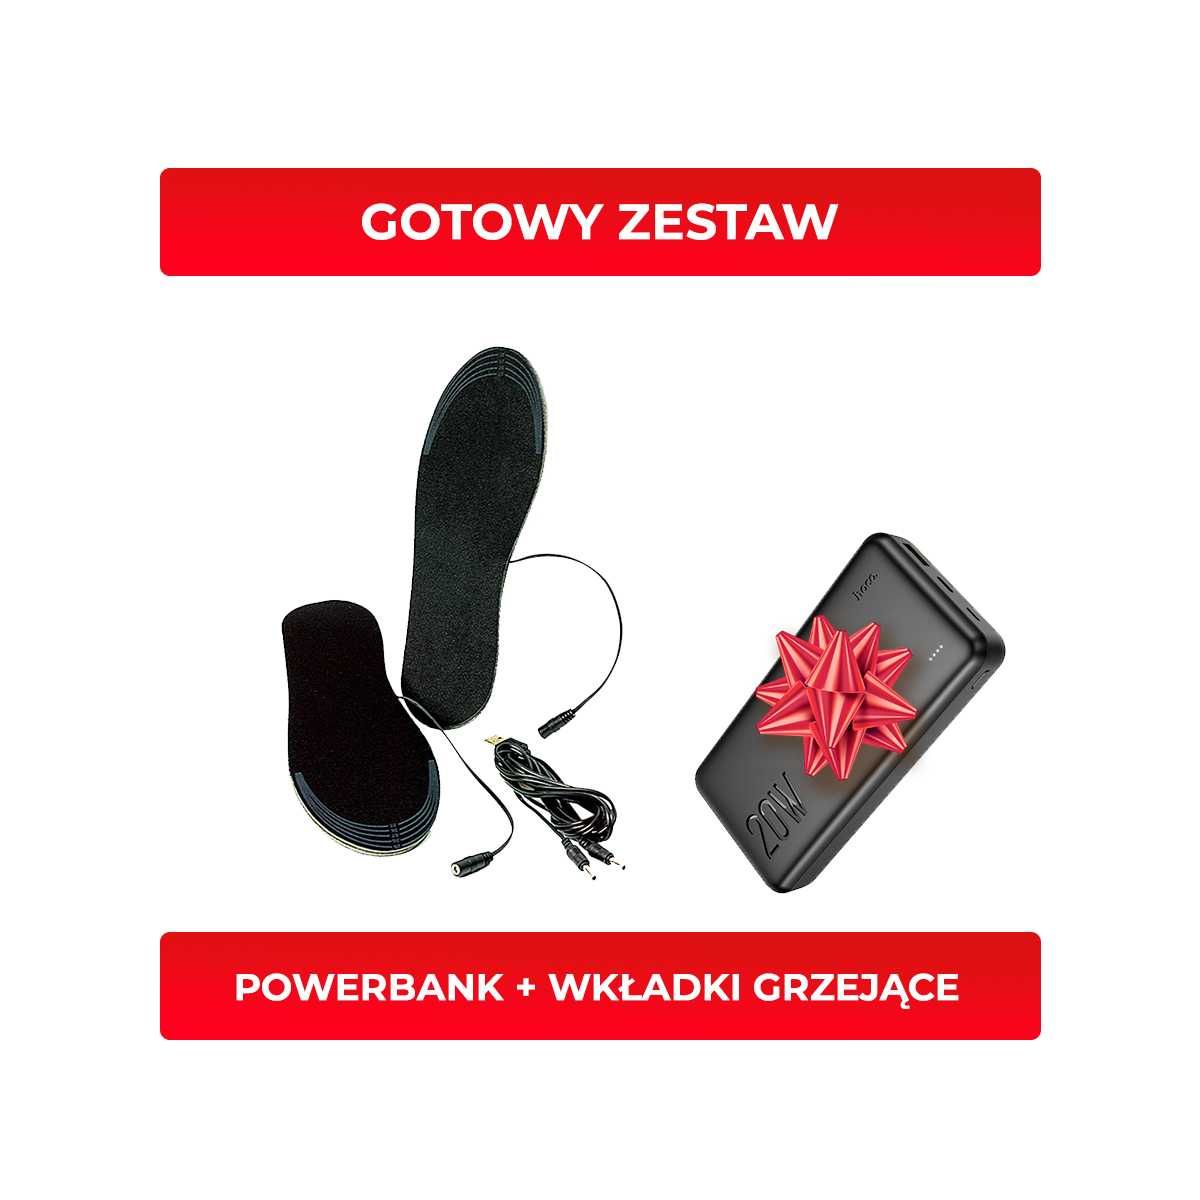 ZESTAW NA ZIMĘ Wkładki do butów podgrzewane + Powerbank + Skarpetki